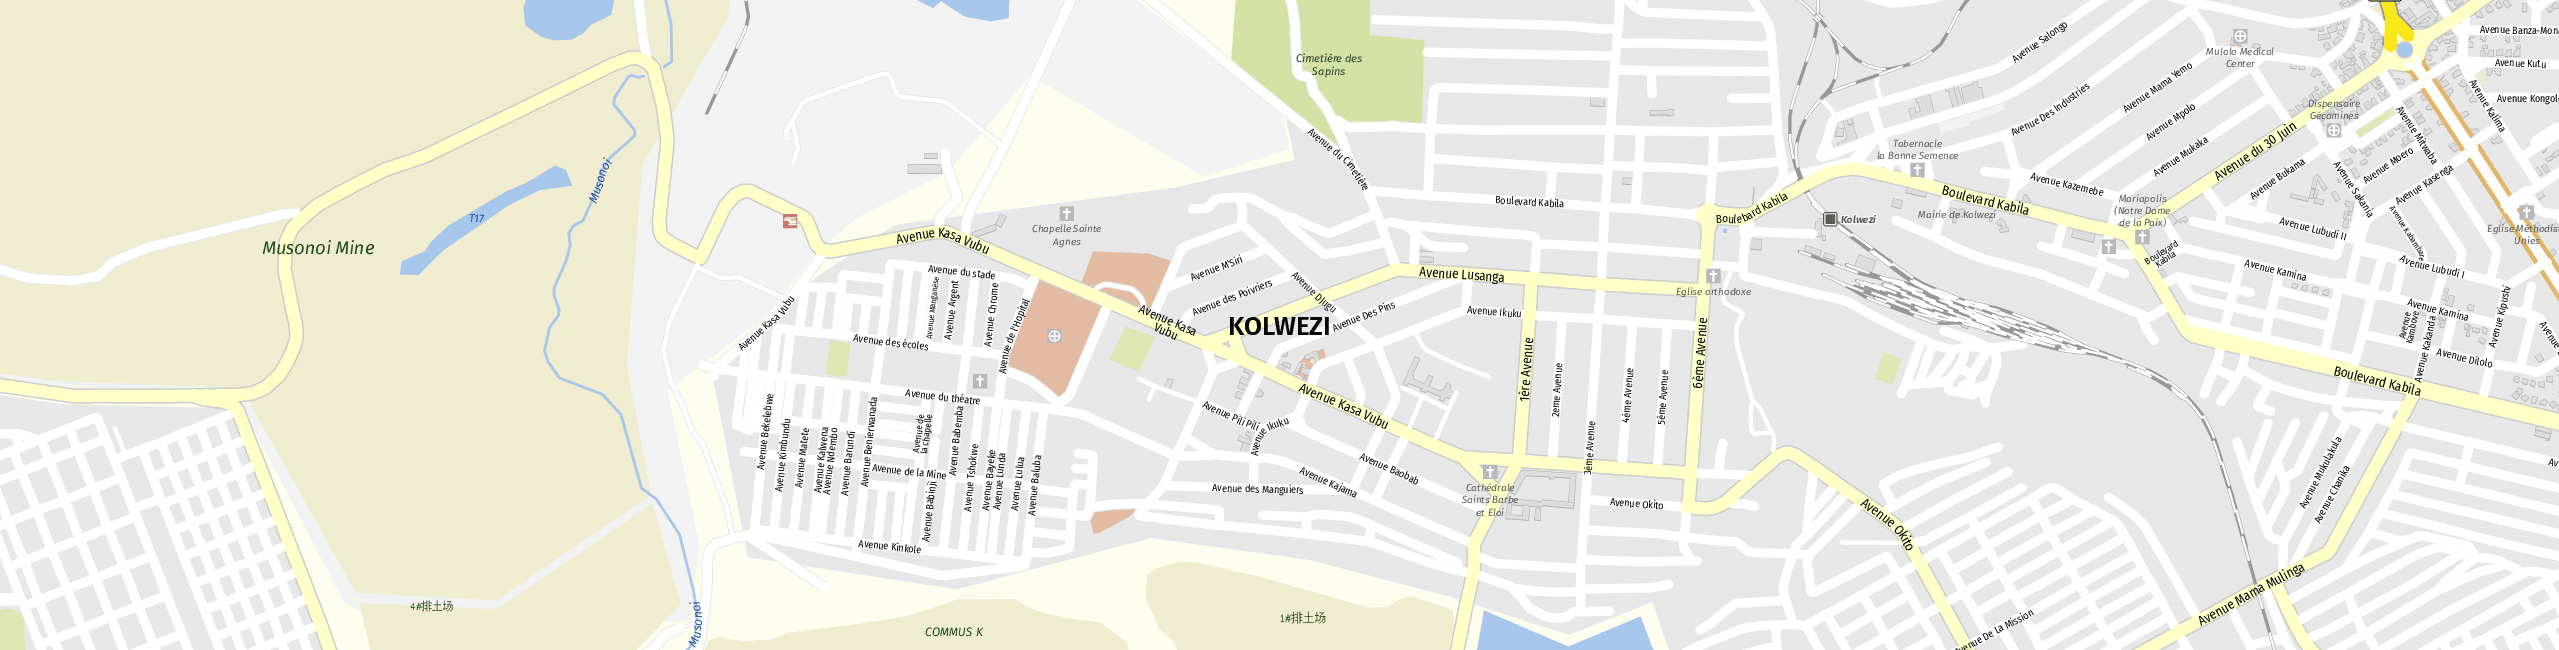 Stadtplan Kolwezi zum Downloaden.